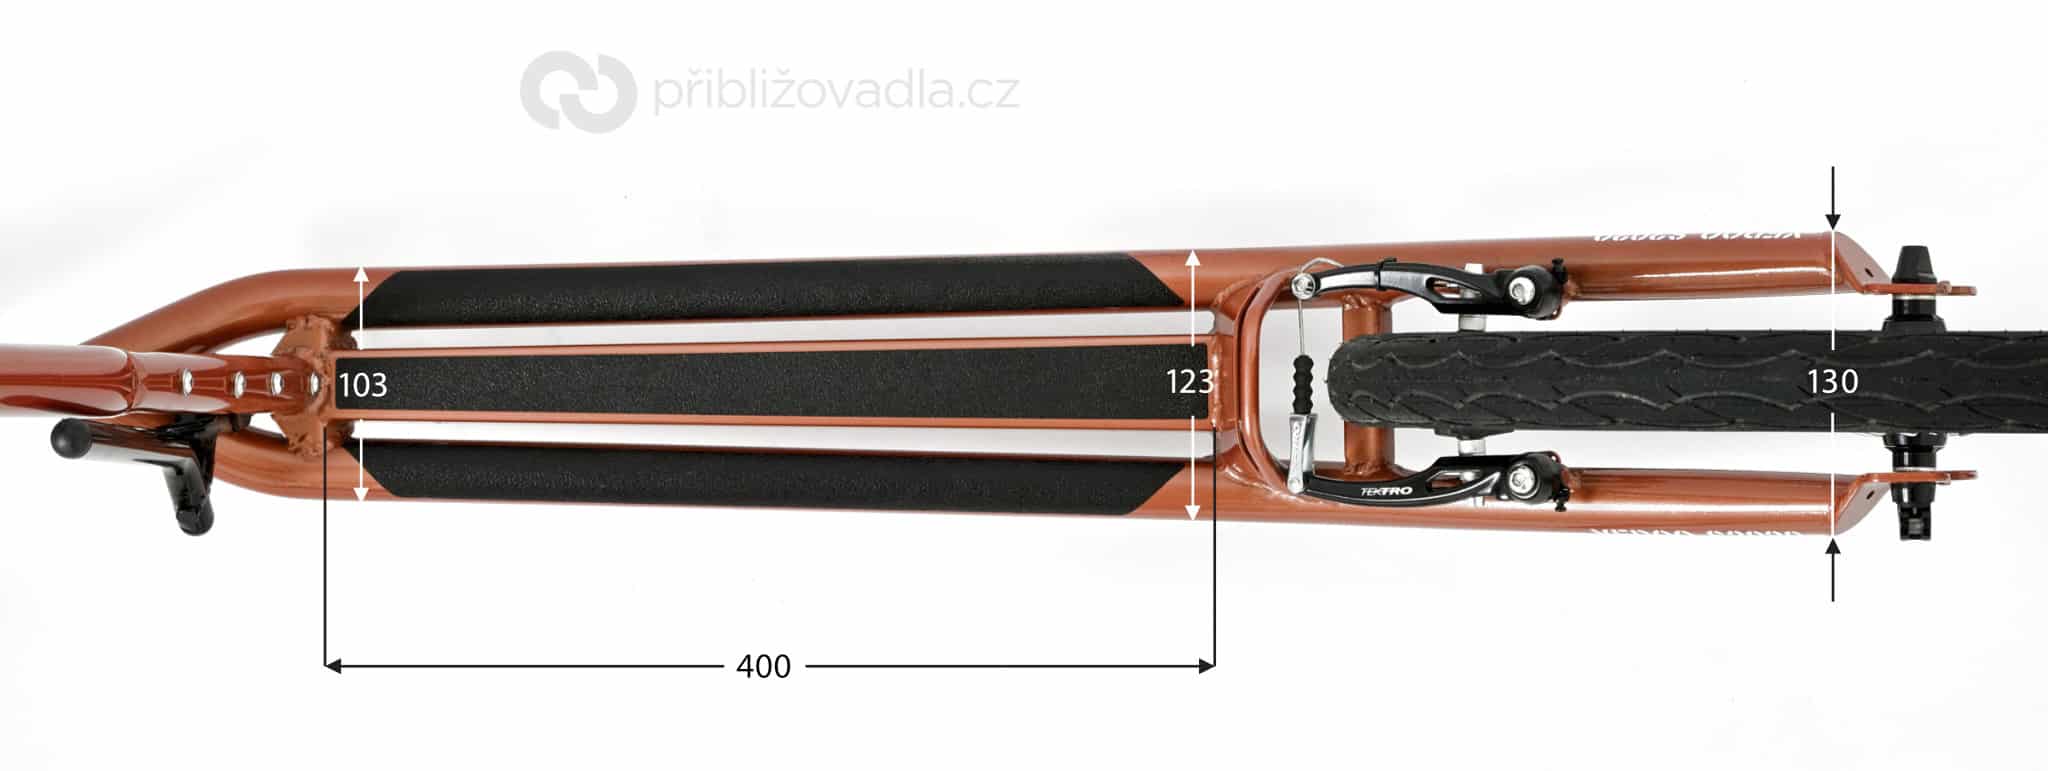 Yedoo S2020 – stupátko | [B] Od příchodu edice Steel používá Yedoo (také v řadě Alloy) nové, širší a kvalitnější pásky, které pod botou nepodkluzují, ale zároveň umožňují pohodlnou výměnu nohou [/B]